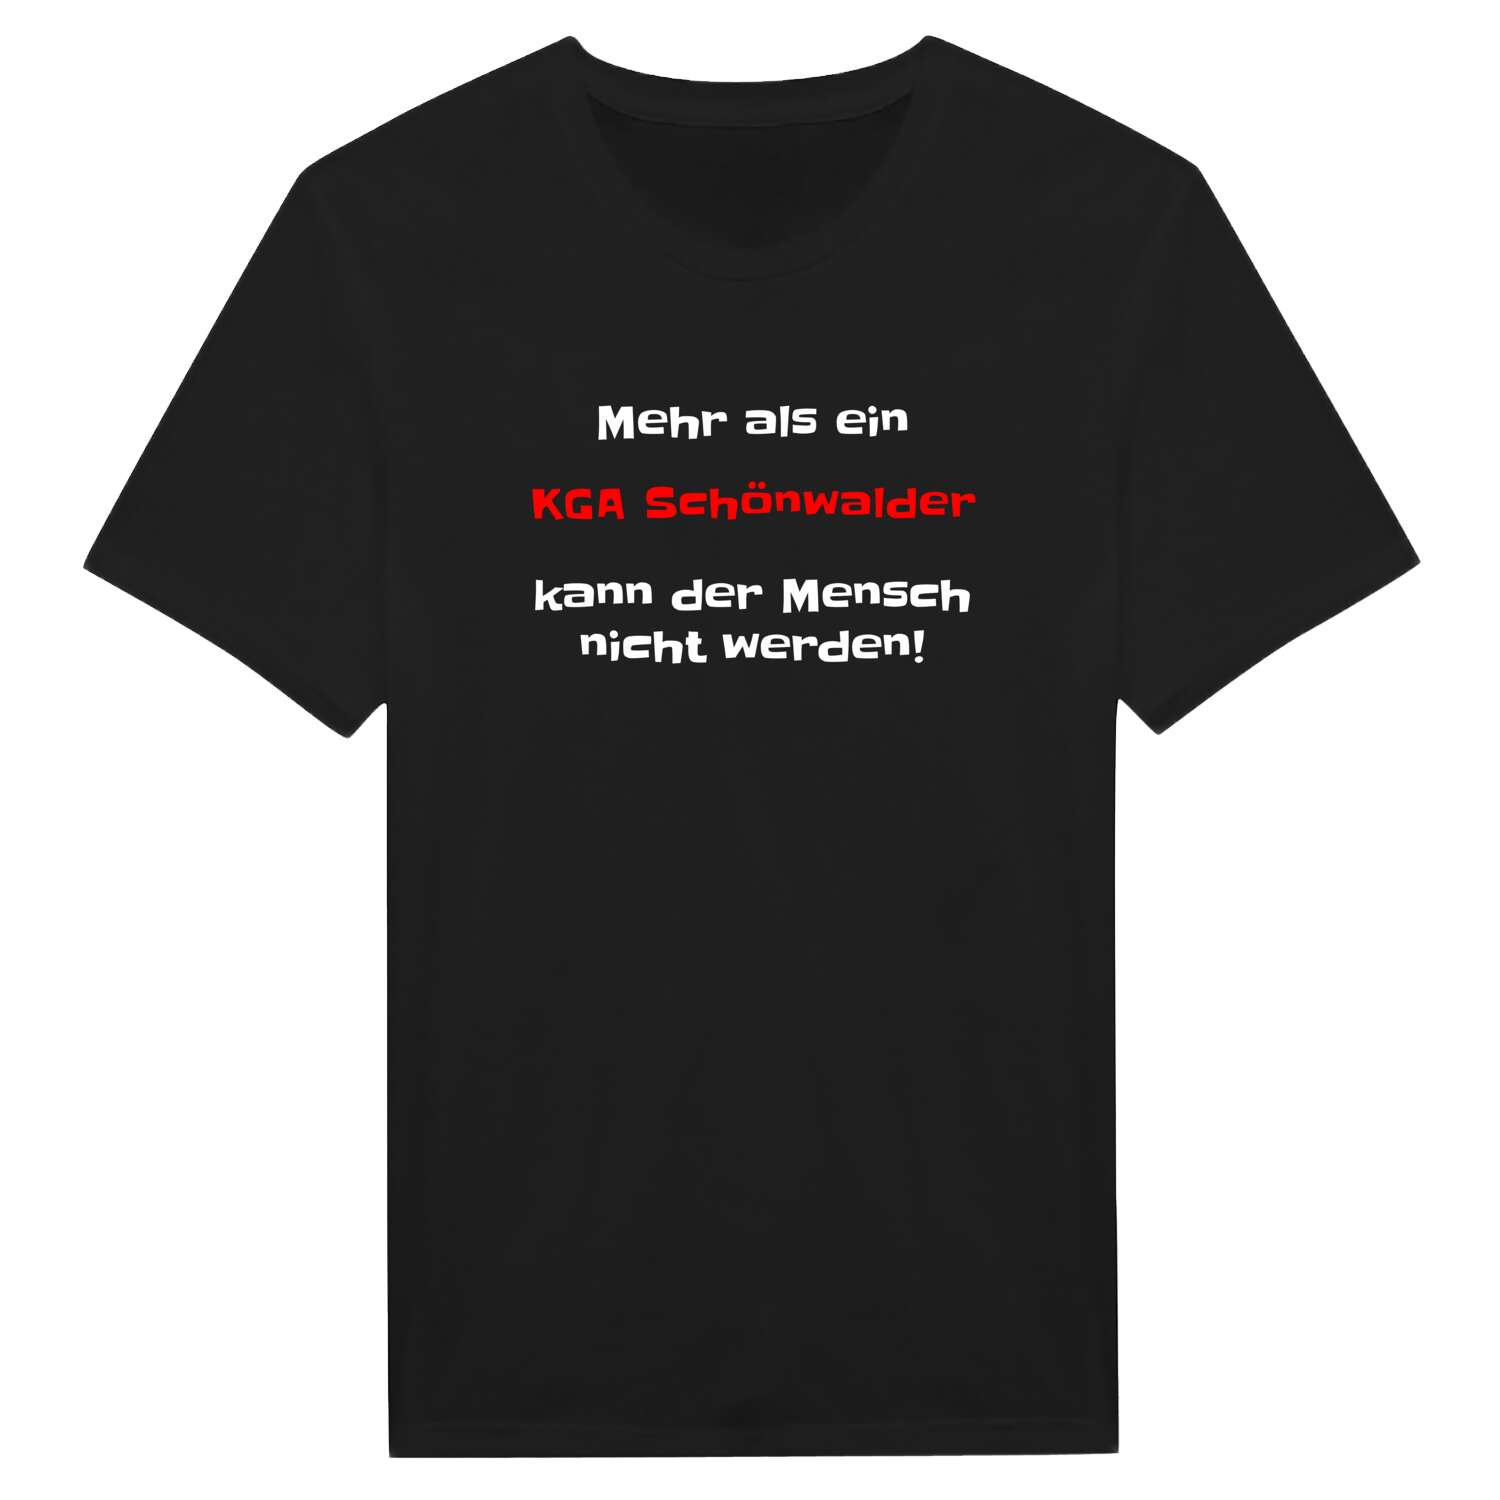 KGA Schönwald T-Shirt »Mehr als ein«